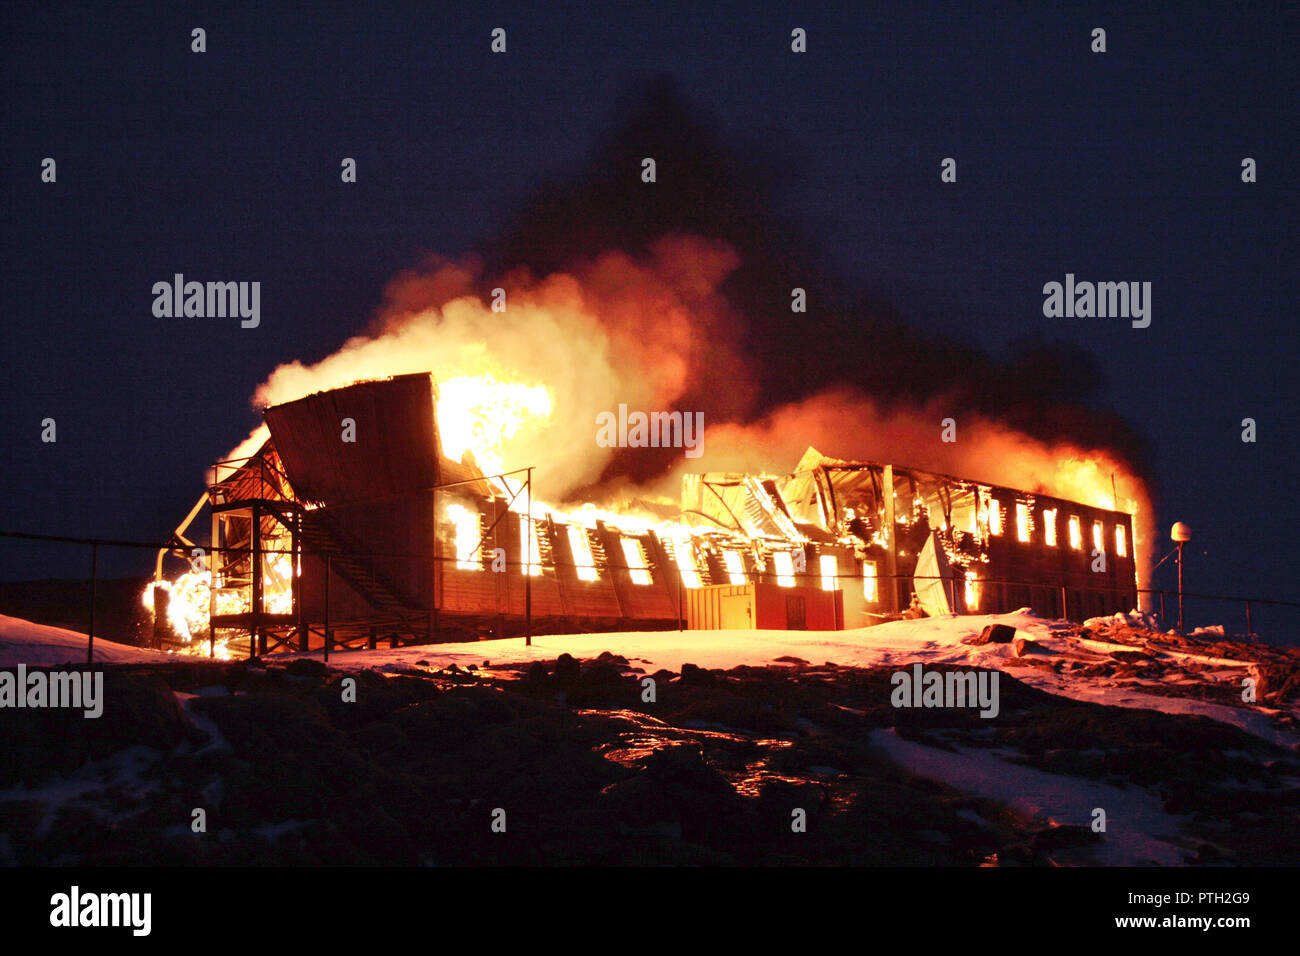 Vieux bâtiment en bois, de la station polaire, mis le feu pour la dépose. L'incendie. La nuit. Corbeille. L'antarctique. Banque D'Images